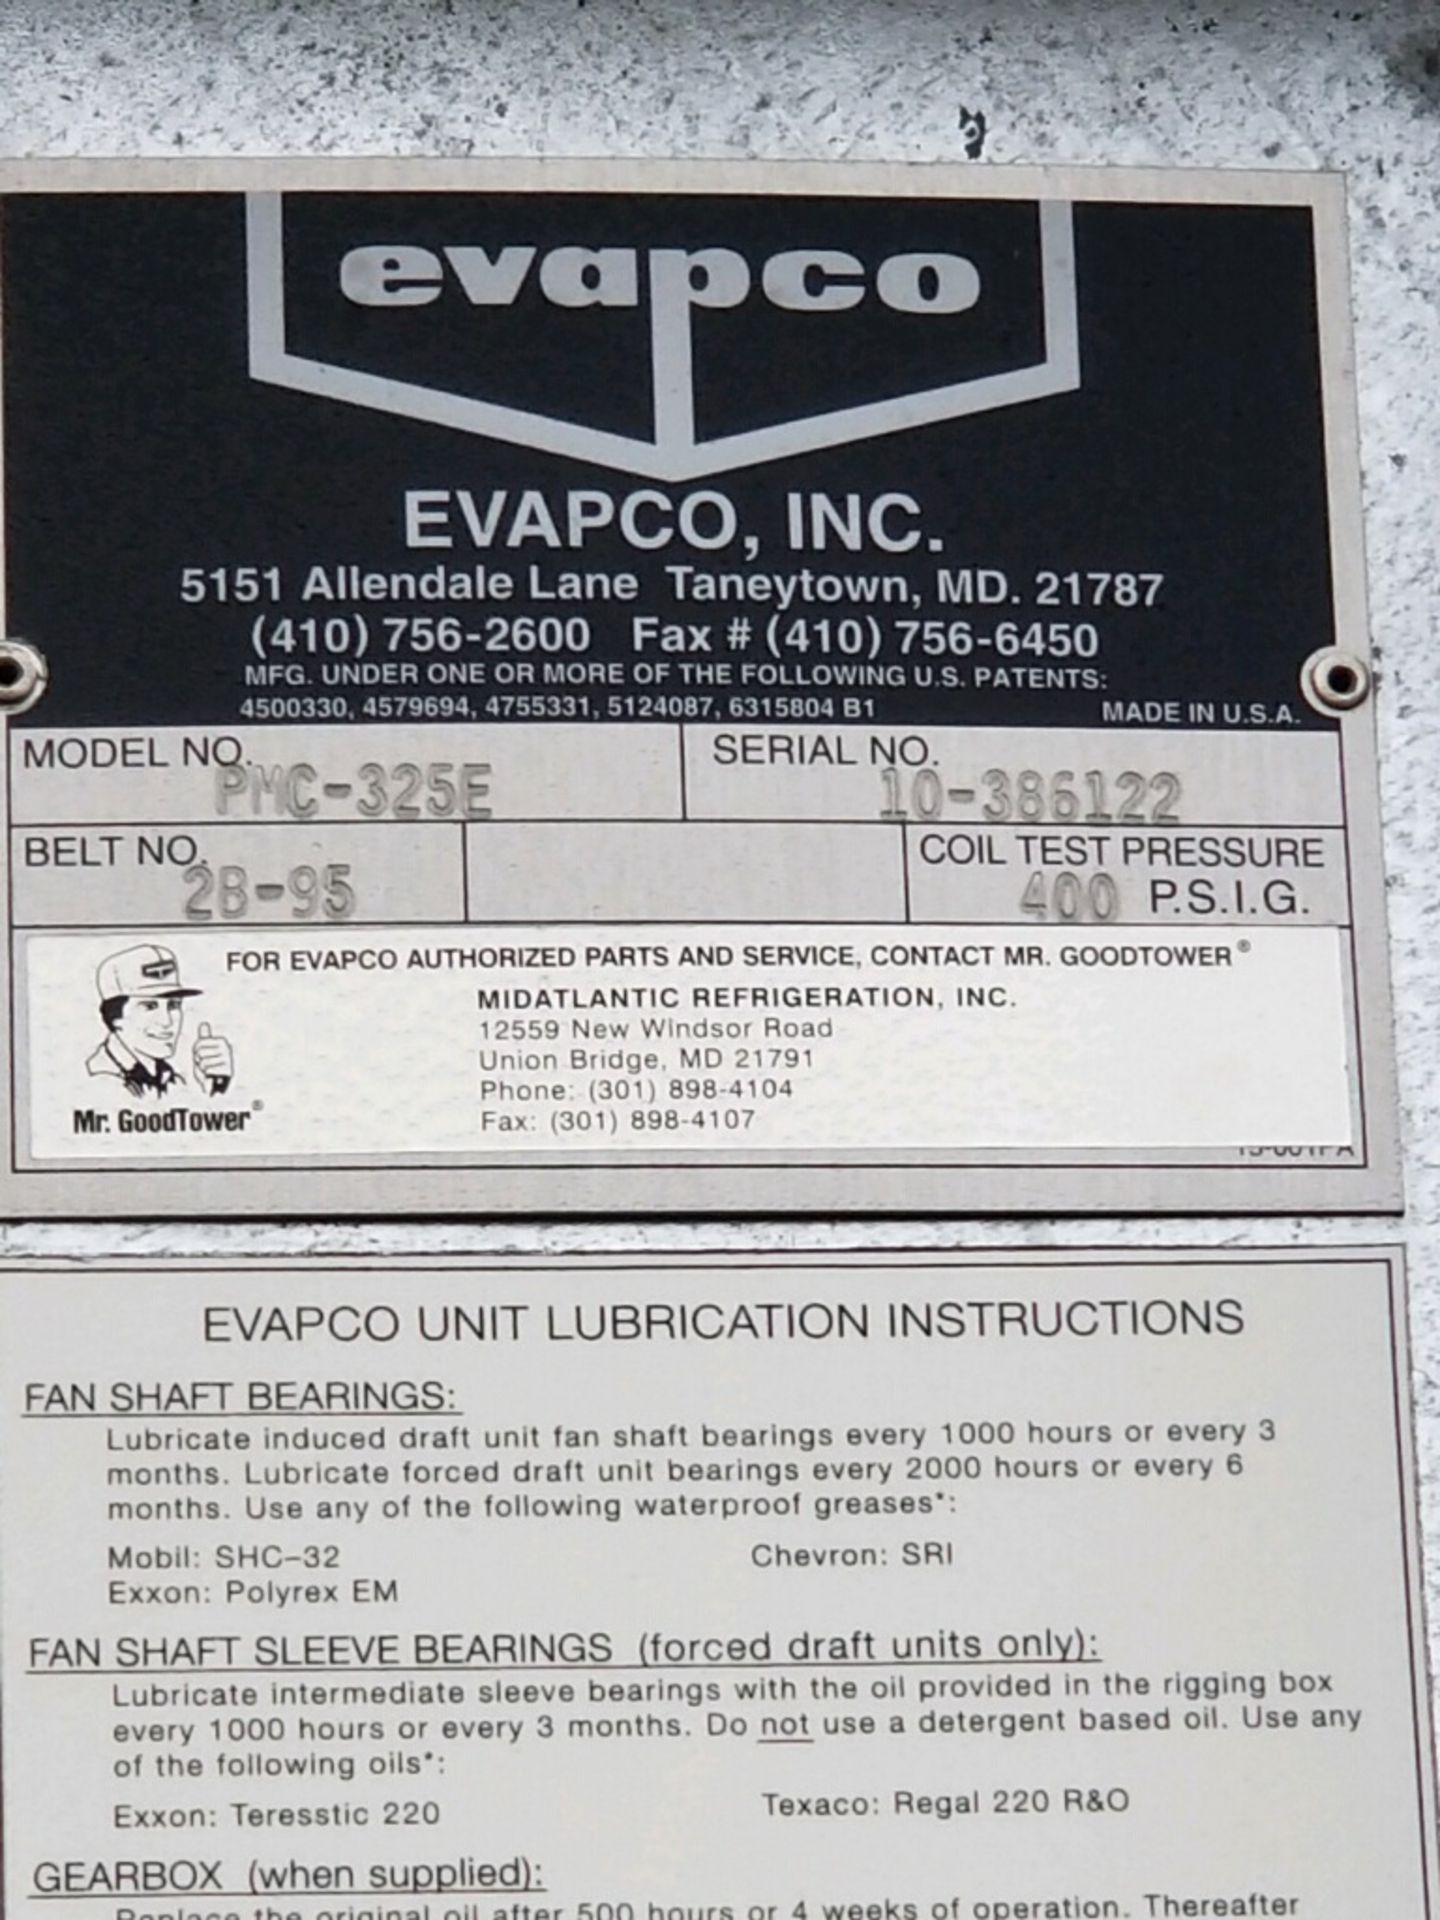 2010 Evapco 3-Fan Evaporative Condenser, Model PMC-325E, S/N 10-386122 (Located Outside) - Image 5 of 5